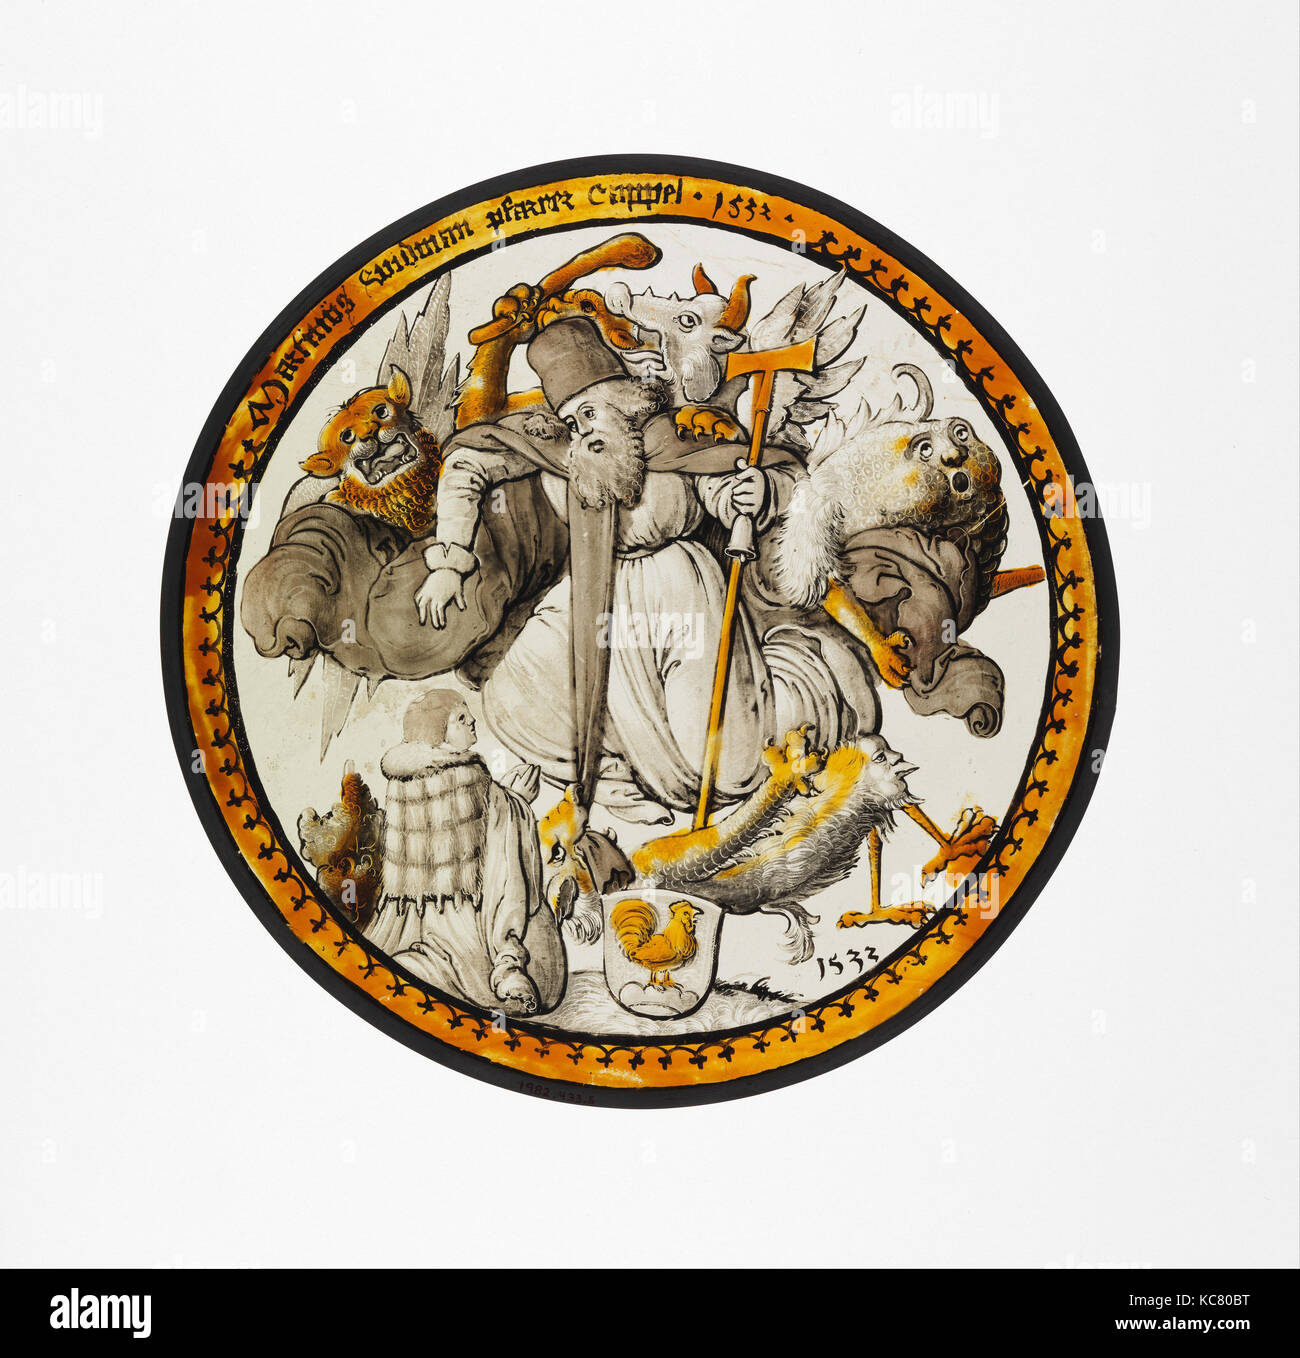 Roundel con la Tentazione di Sant Antonio, 1532, realizzato in Svevia, Tedesco, vetro incolore, vernice vetrosa e colorazione con argento Foto Stock